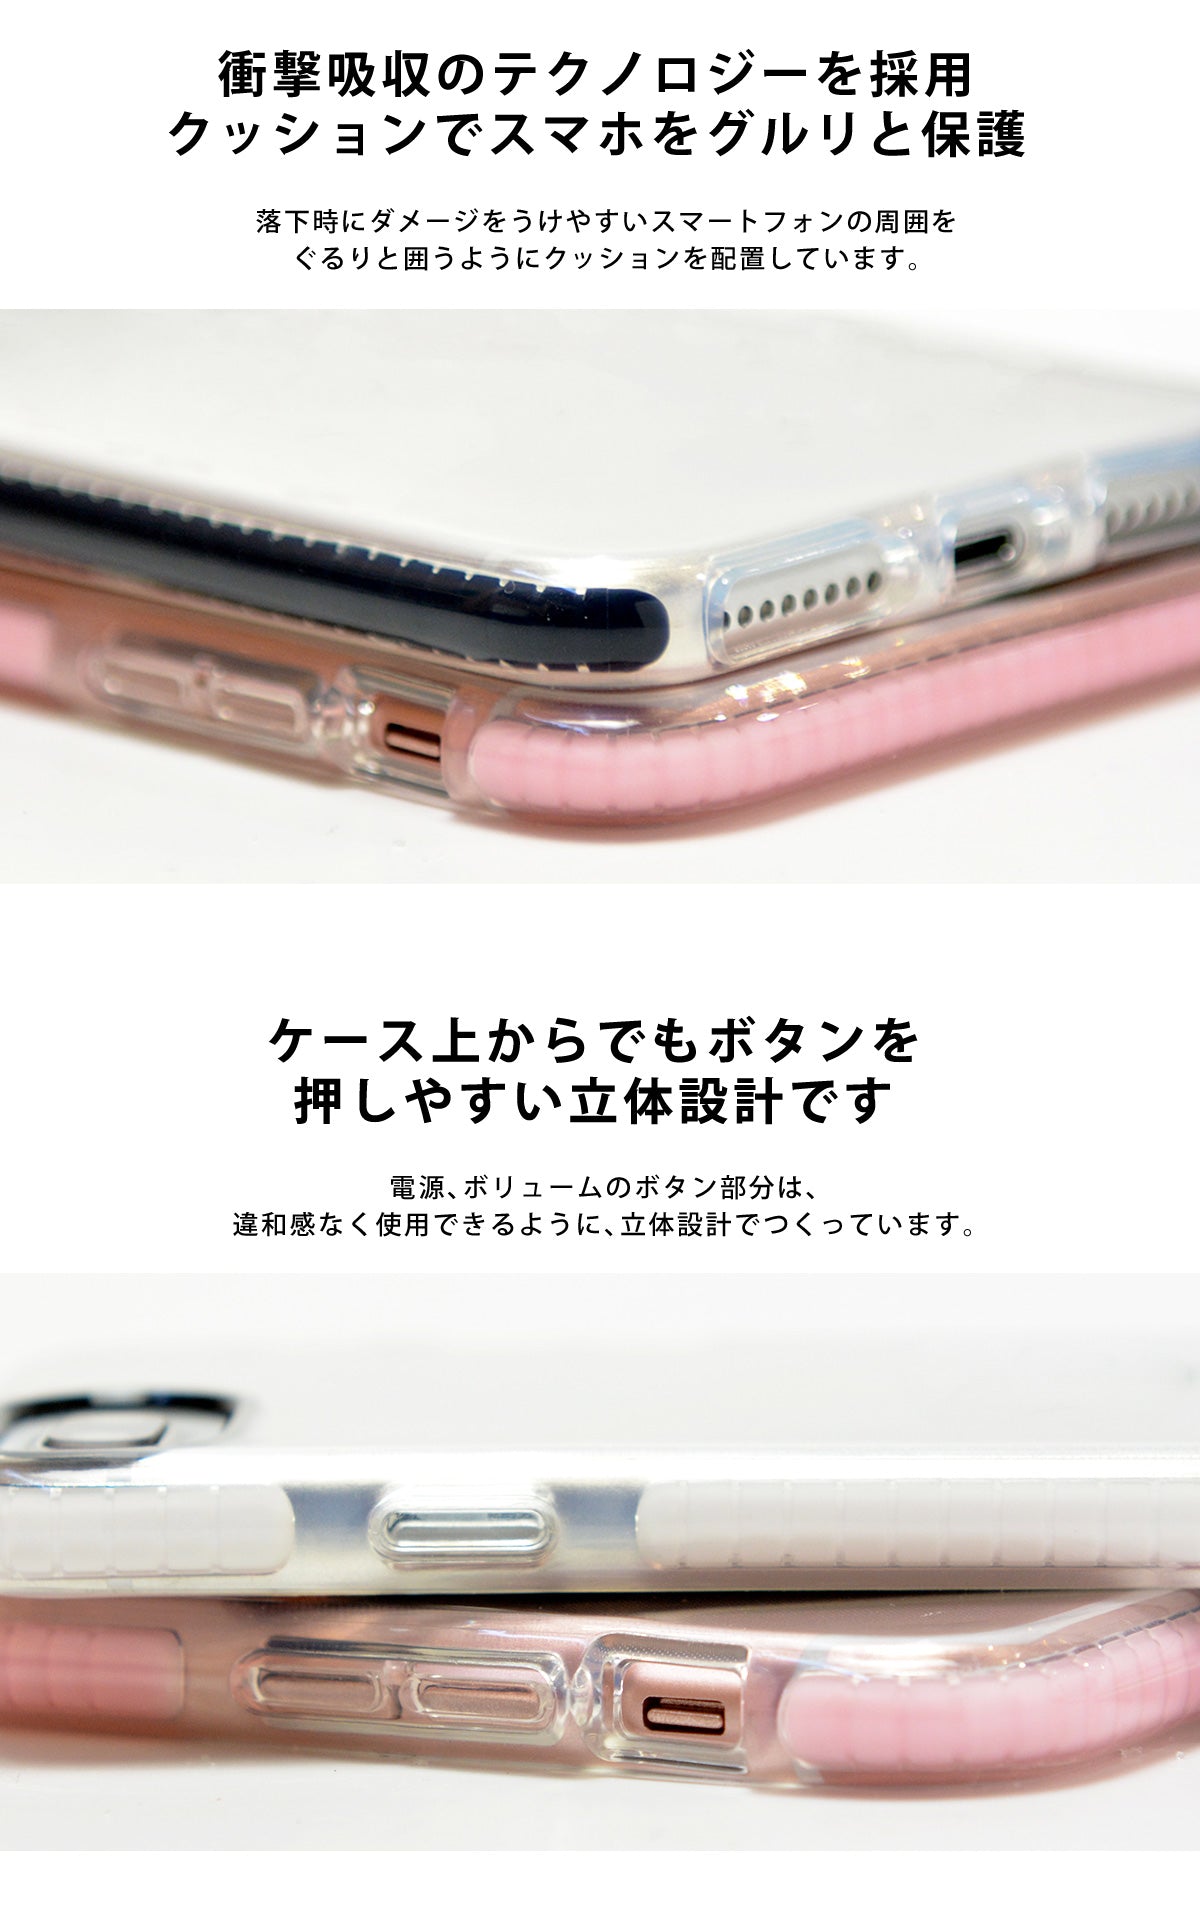 iPhone XR/XS/X/8 ソフトケース 透明 クリア おしゃれ かわいい tpu sc1459